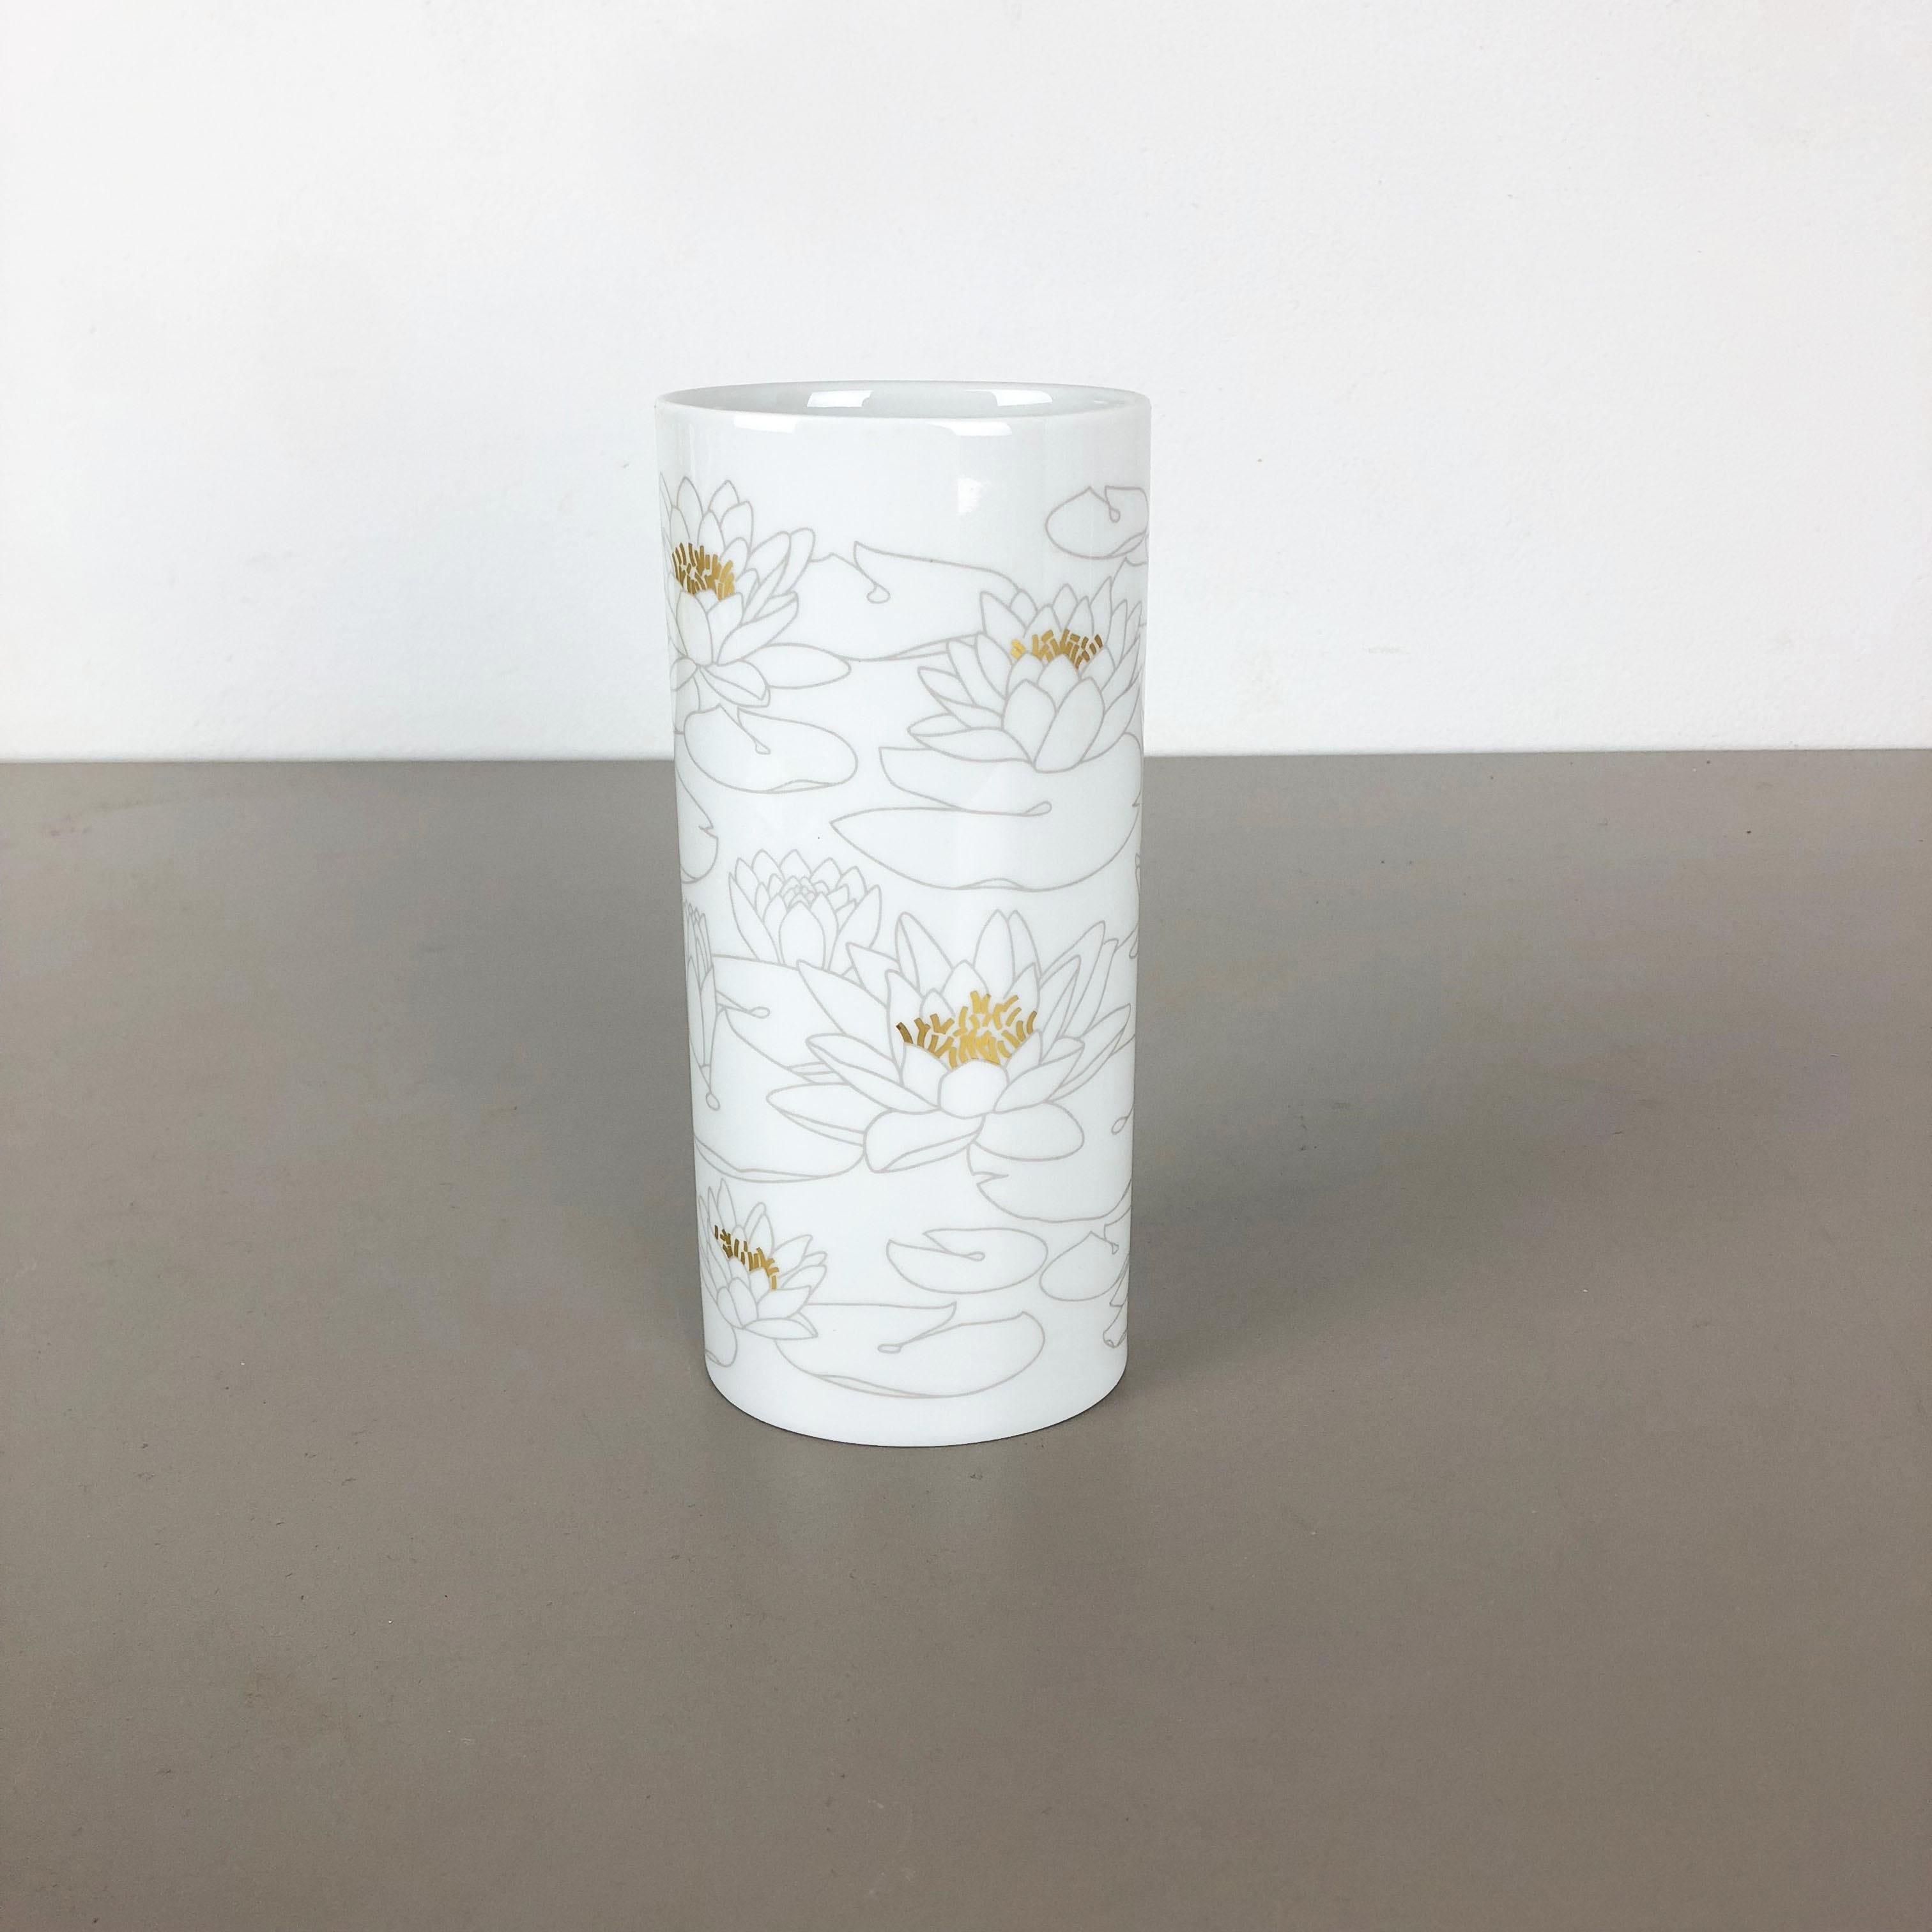 Article :

Vase en porcelaine OP Art


Producteur :

Rosenthal, Allemagne


Décennie :

1970s




Ce vase vintage original d'OP Art of Vintage a été produit dans les années 1970 en Allemagne. Il est en porcelaine et sa surface est